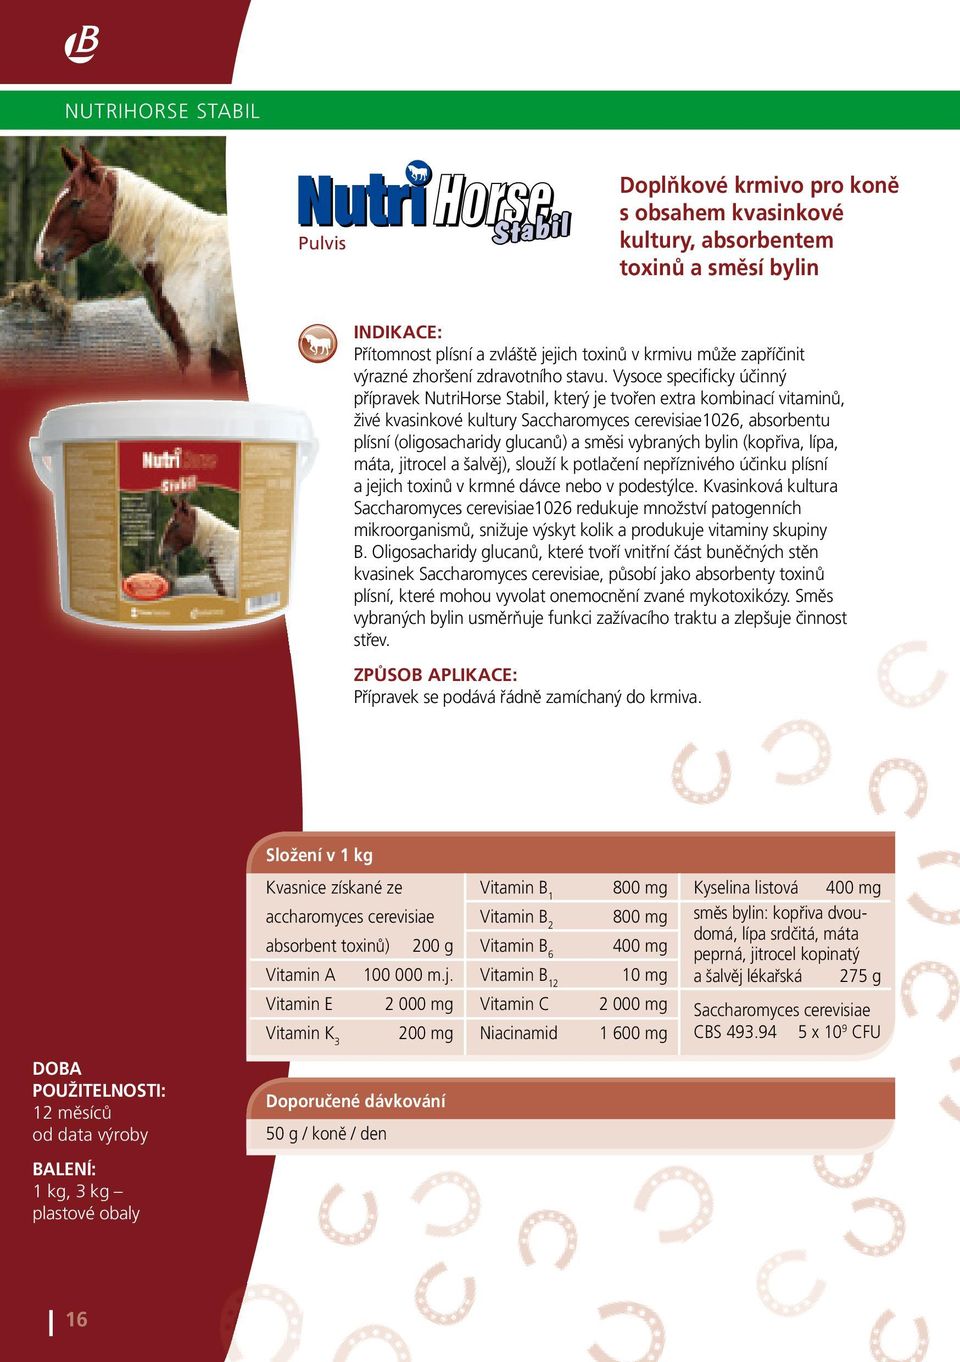 Vysoce specificky účinný přípravek NutriHorse Stabil, který je tvořen extra kombinací vitaminů, živé kvasinkové kultury Saccharomyces cerevisiae1026, absorbentu plísní (oligosacharidy glucanů) a